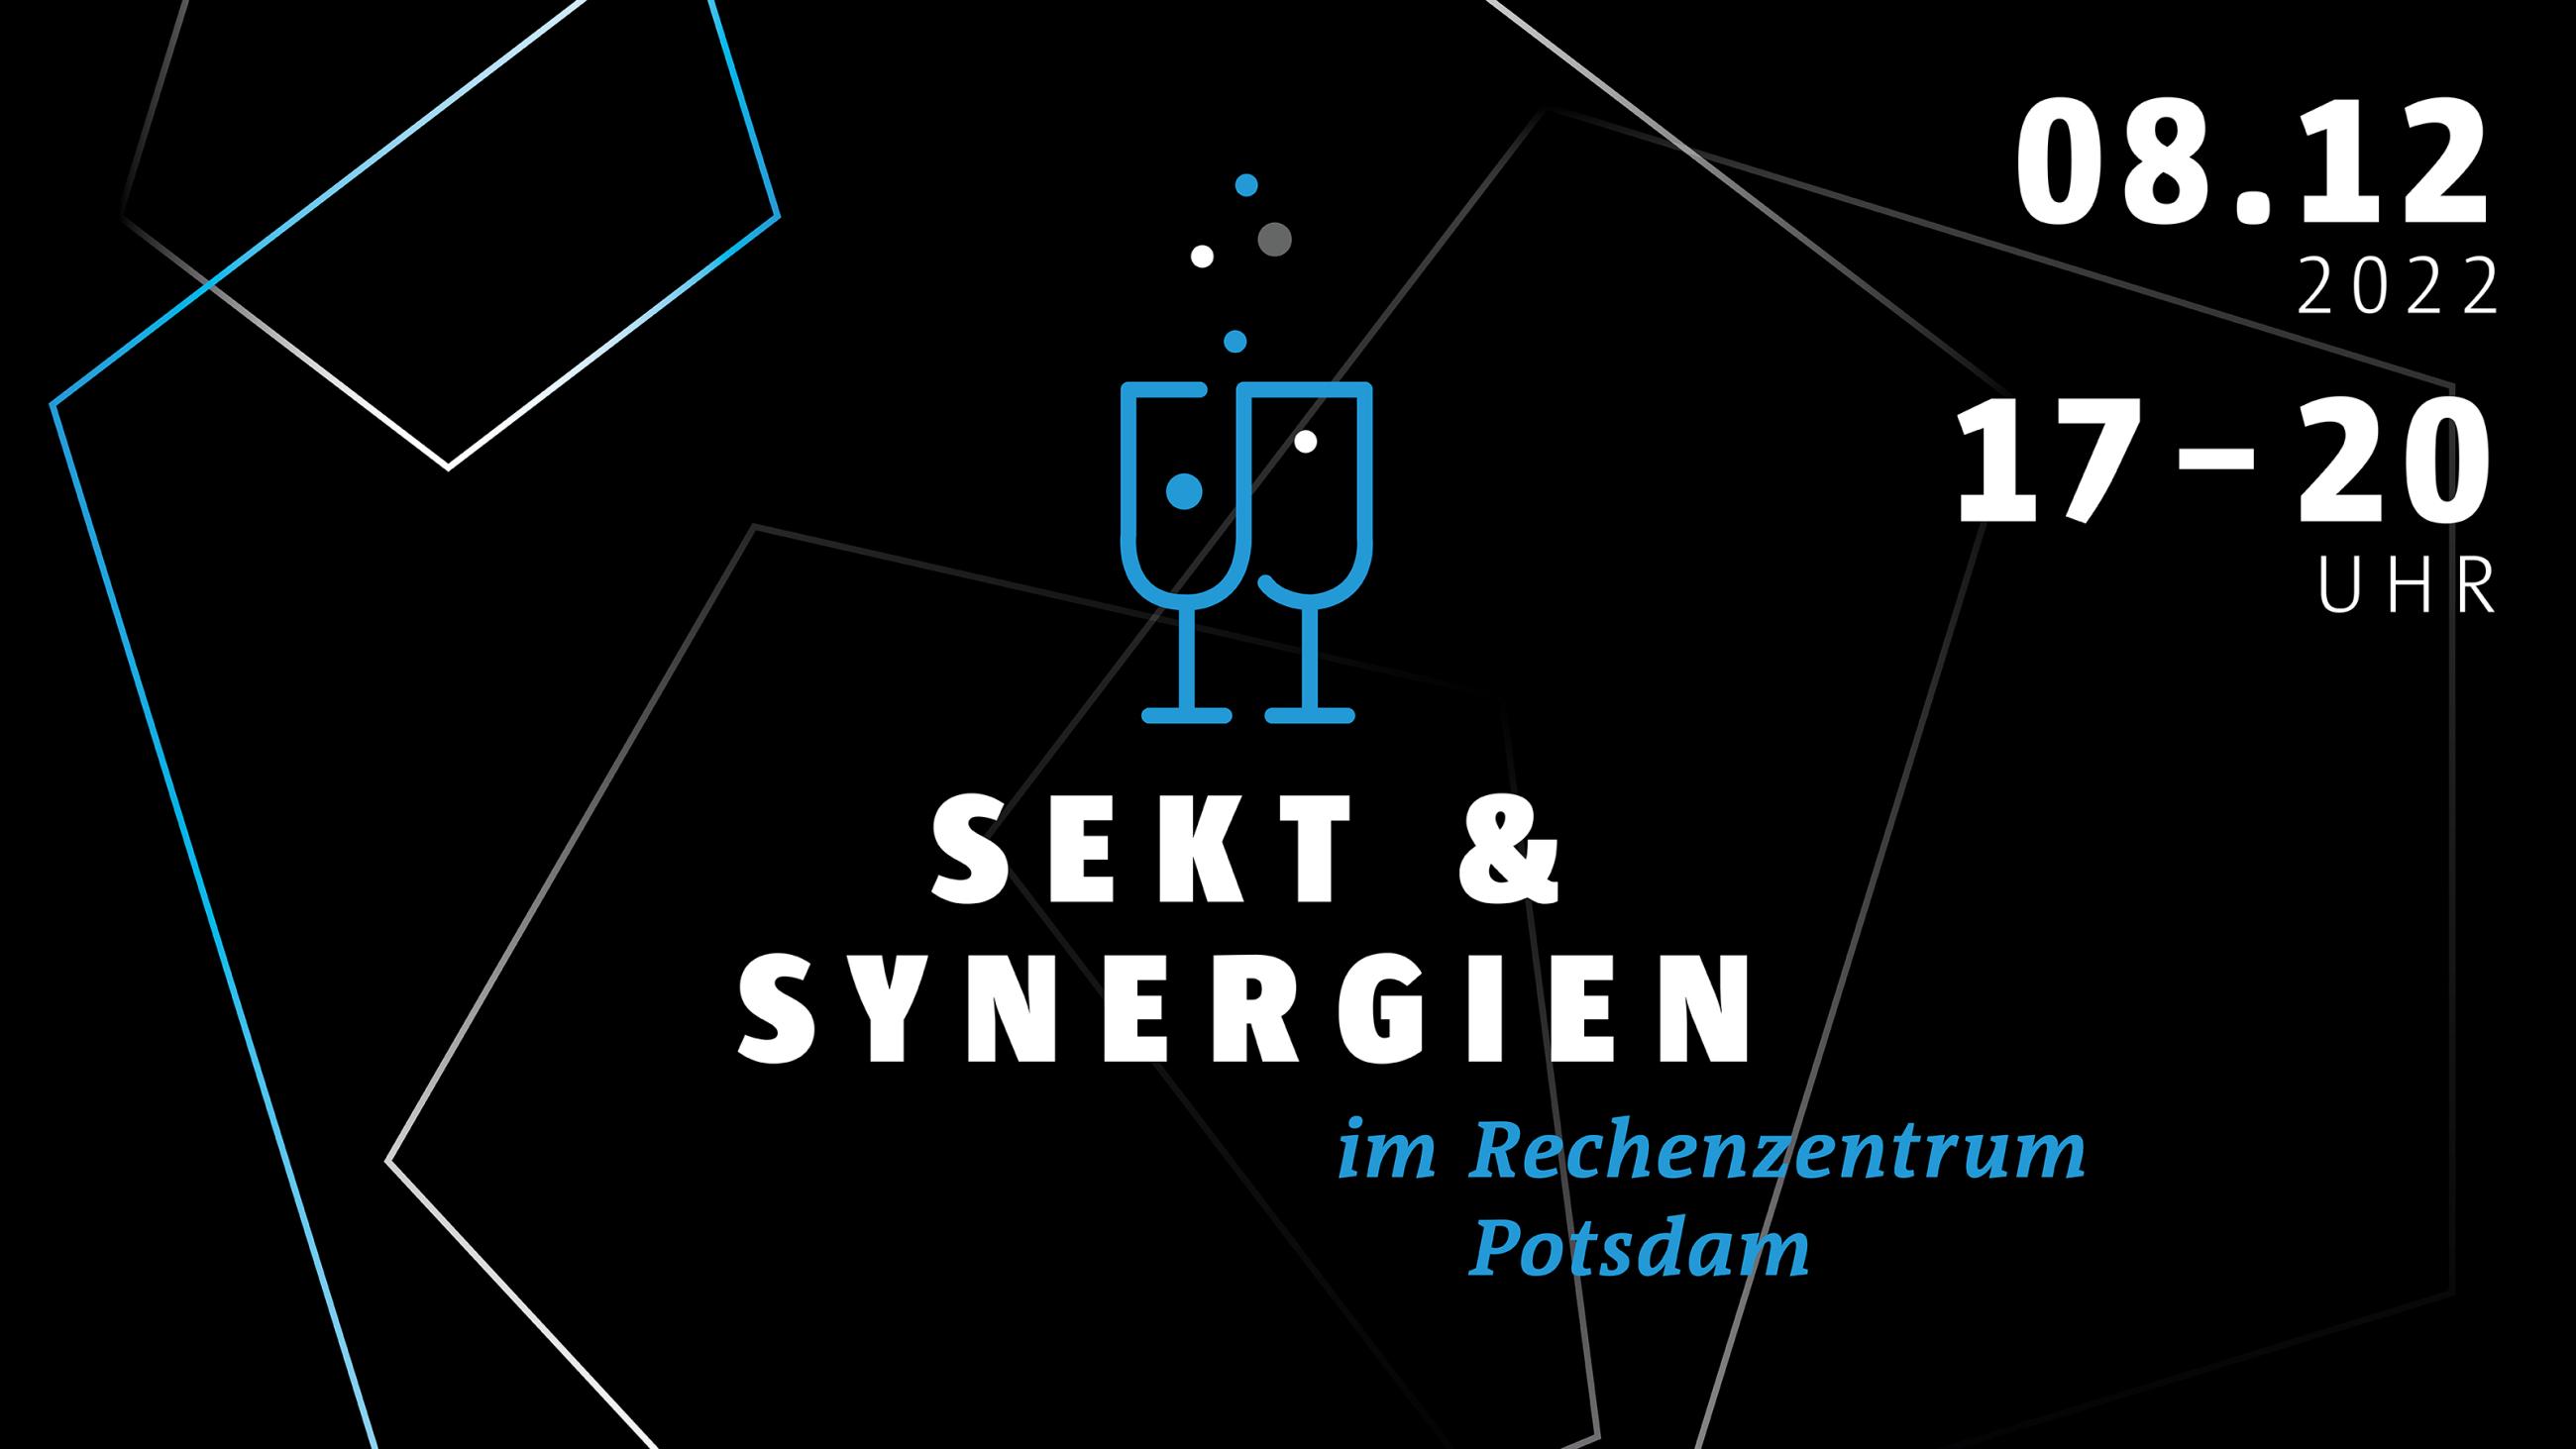 Schriftzug Sekt & Synergien mit zwei gefüllten Sektgläsern in Blau auf schwarzem Hintergrund